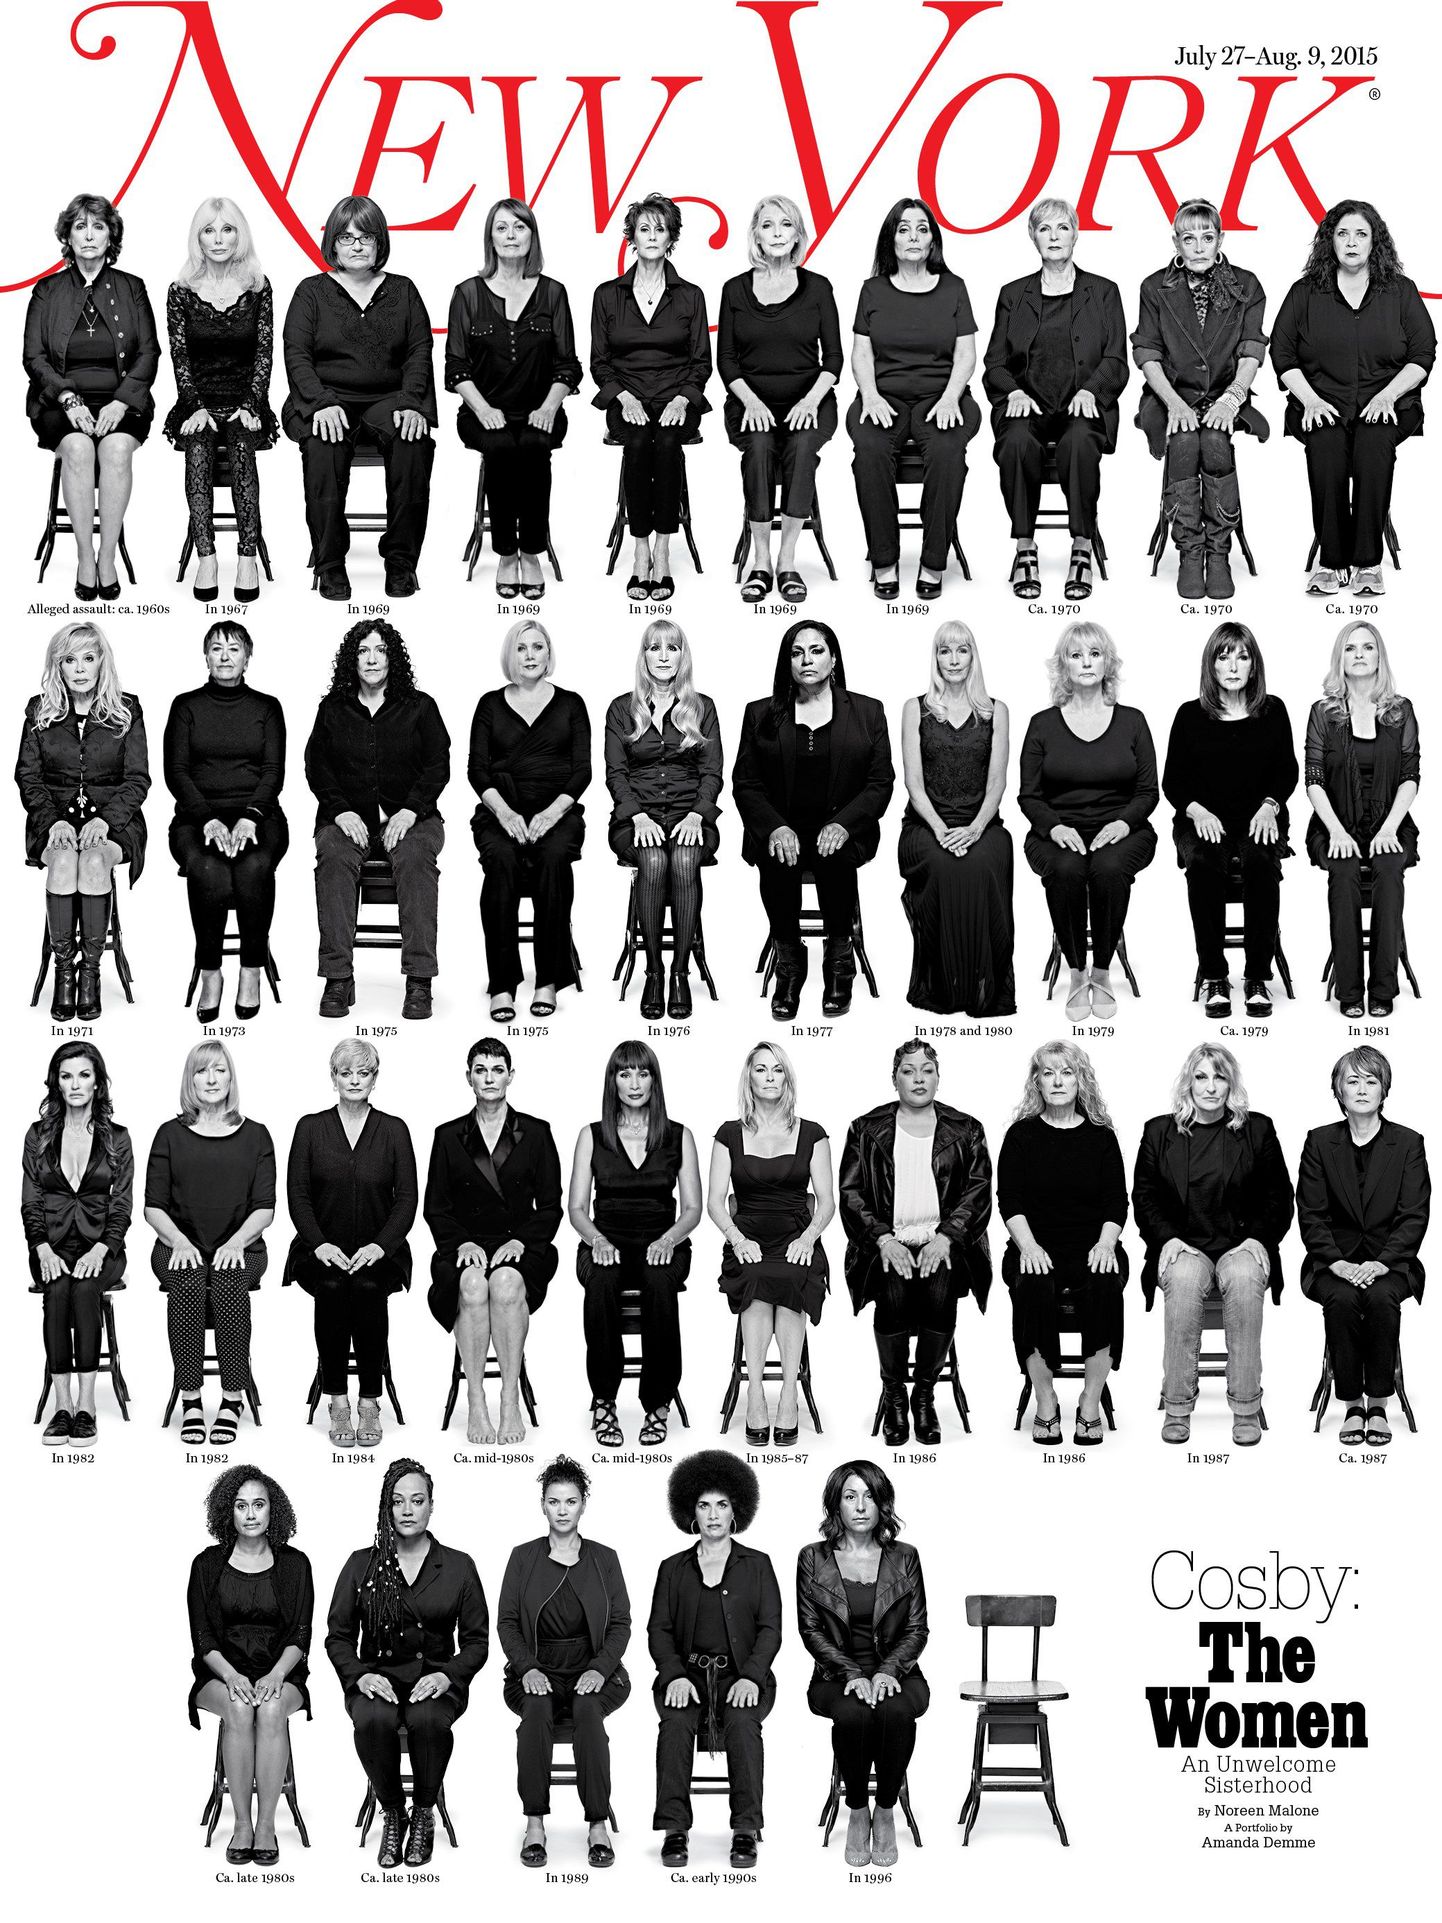 Väljaande New York esikaas, millel on Bill Cosbyt seksuaalses ärakasutamises süüdistavad naised